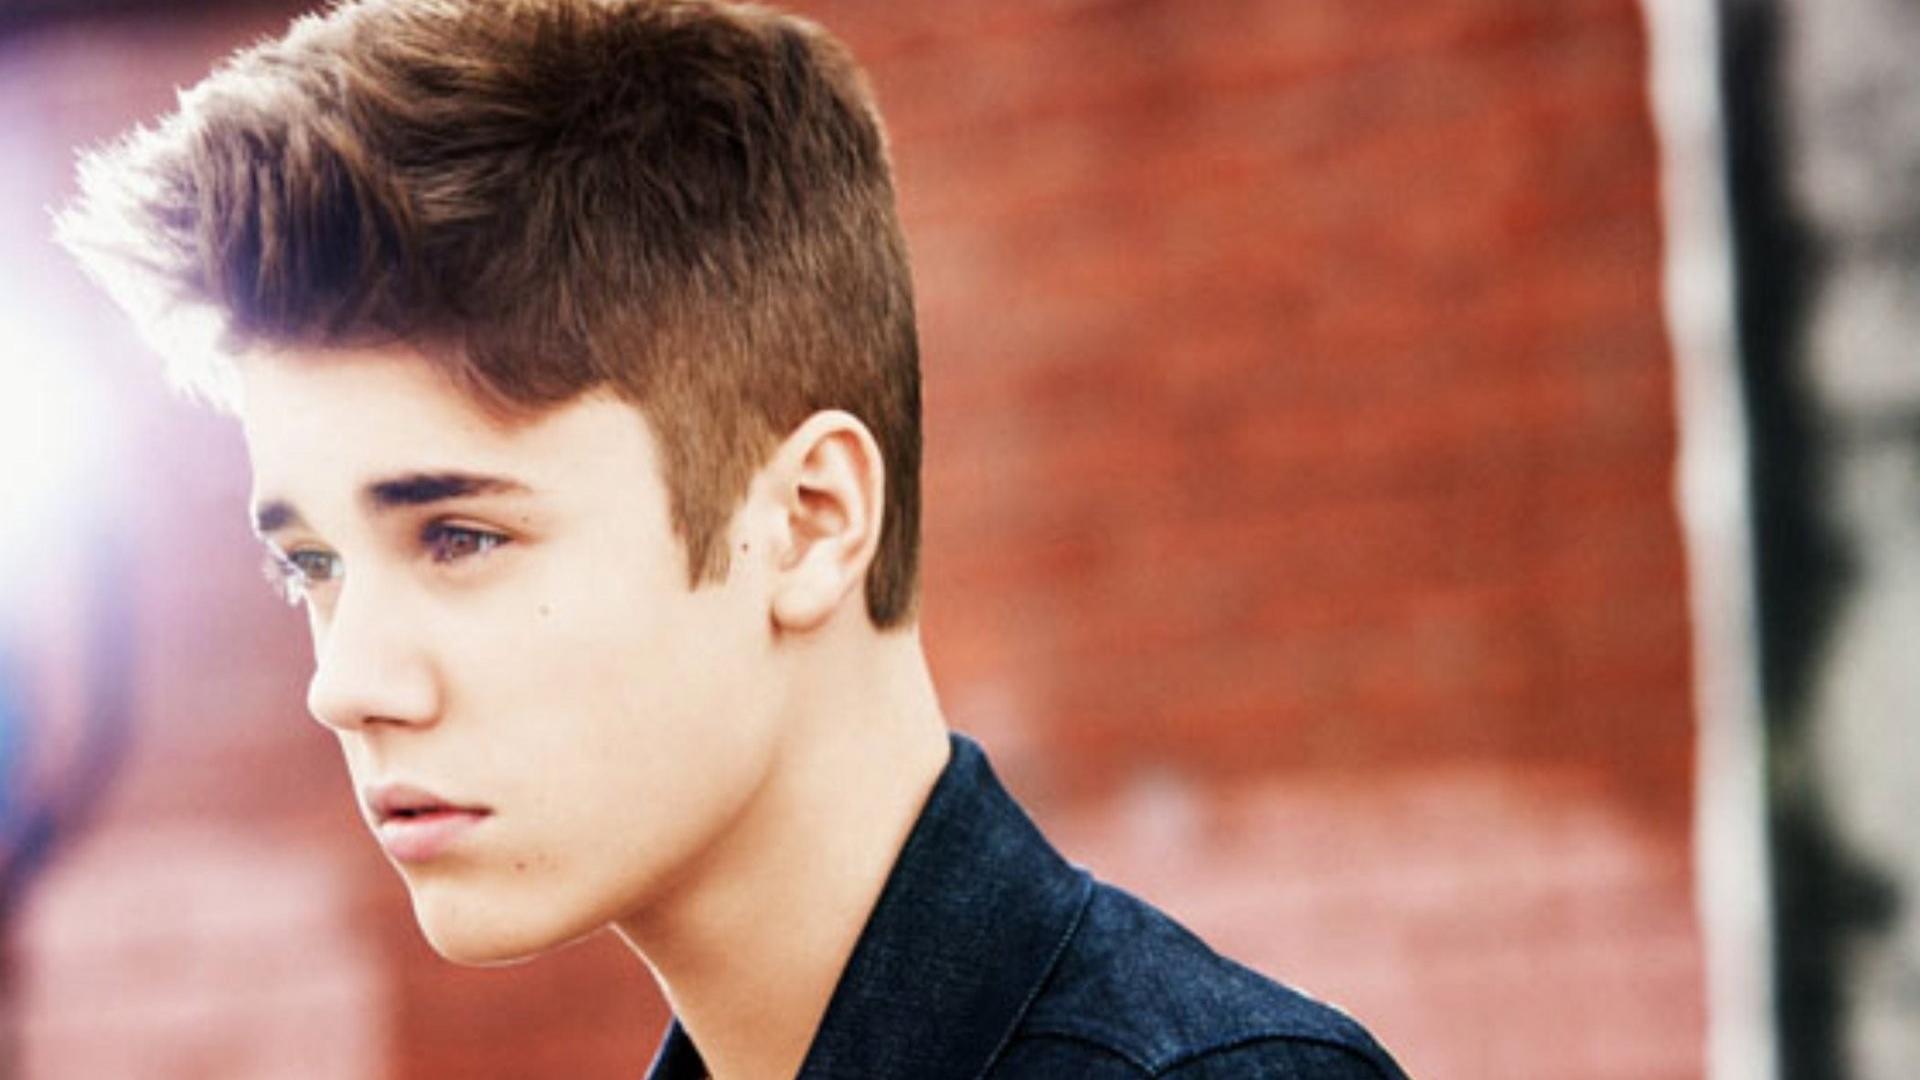 Justin Bieber Wallpaper HD